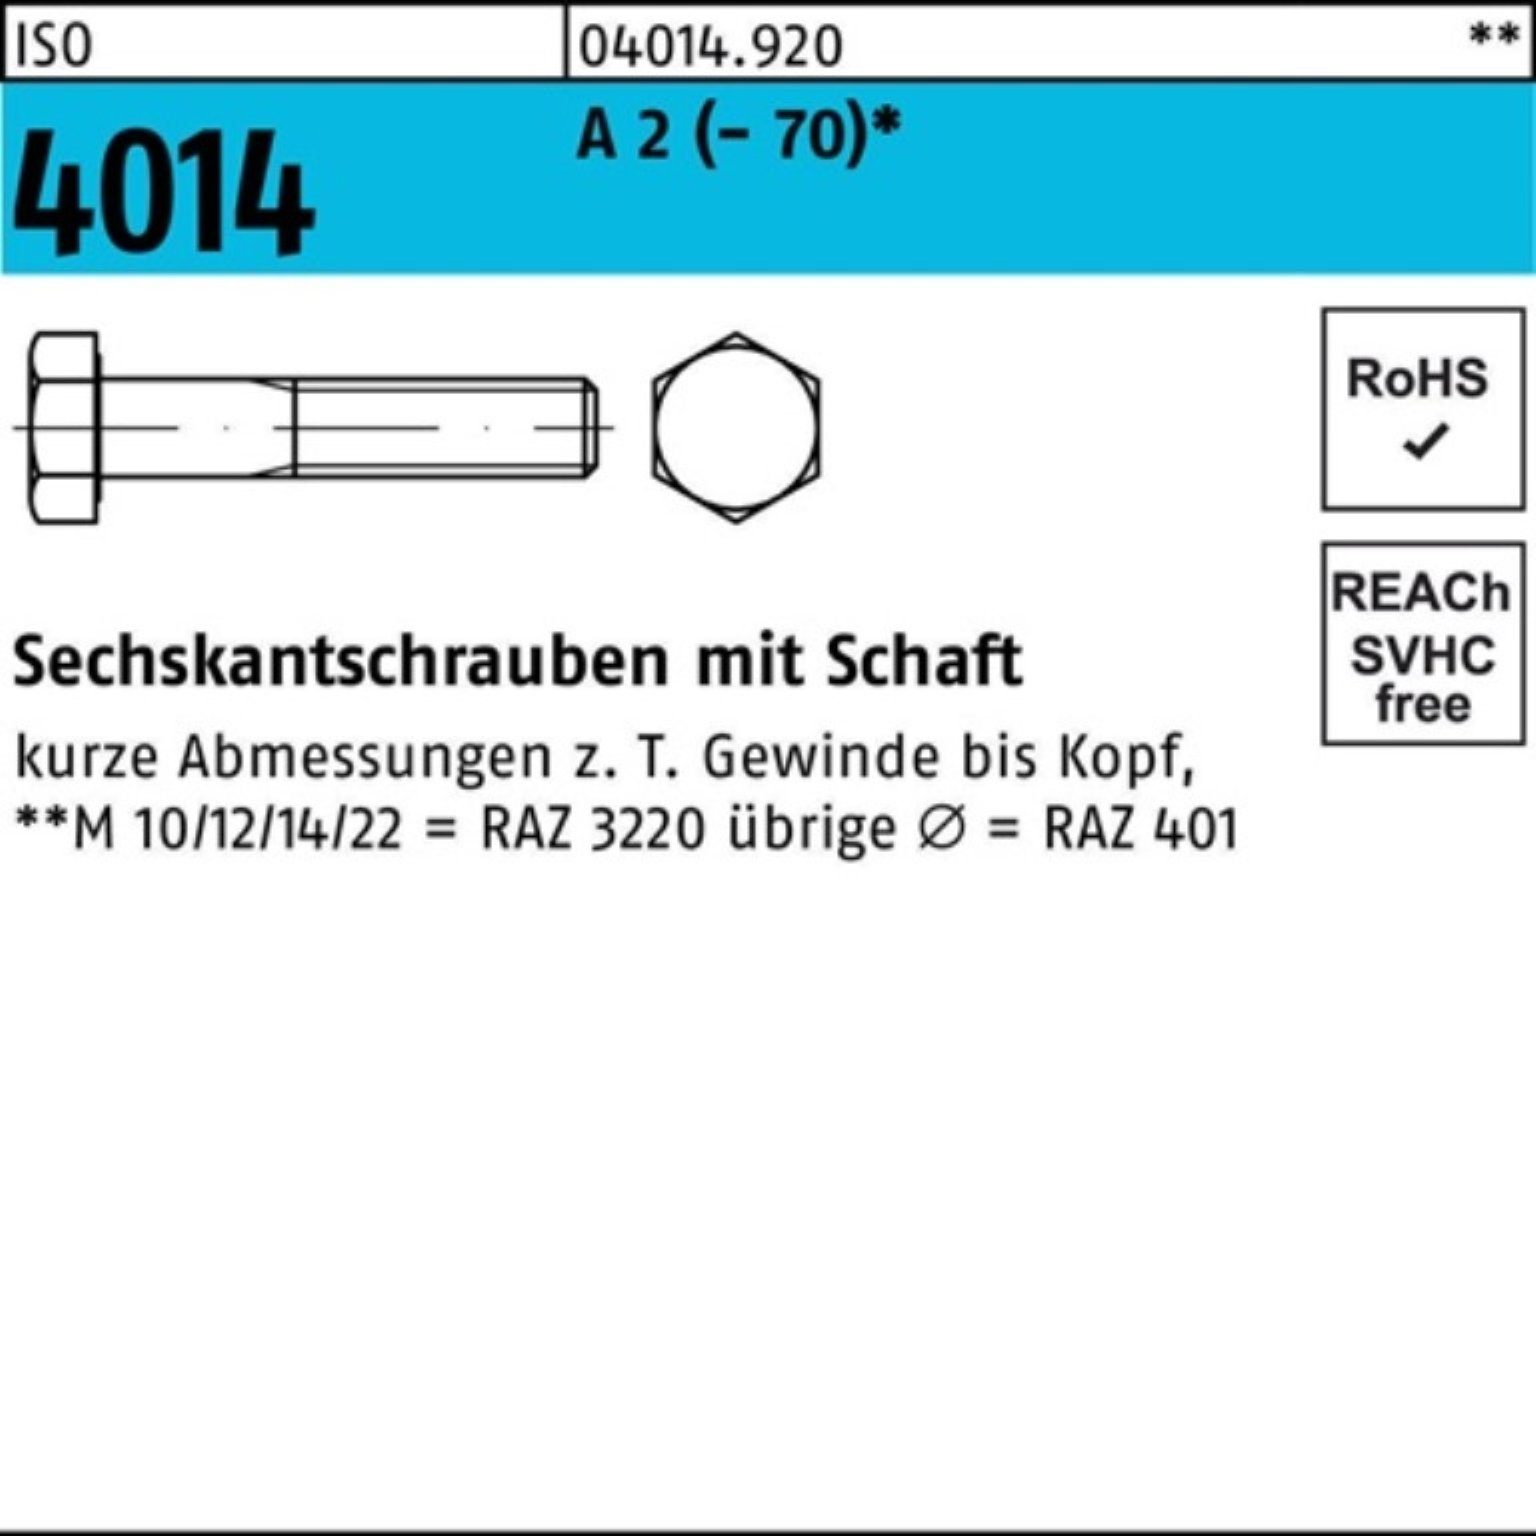 Bufab Sechskantschraube 100er Pack Sechskantschraube ISO 4014 Schaft M10x 130 A 2 (70) 50 St